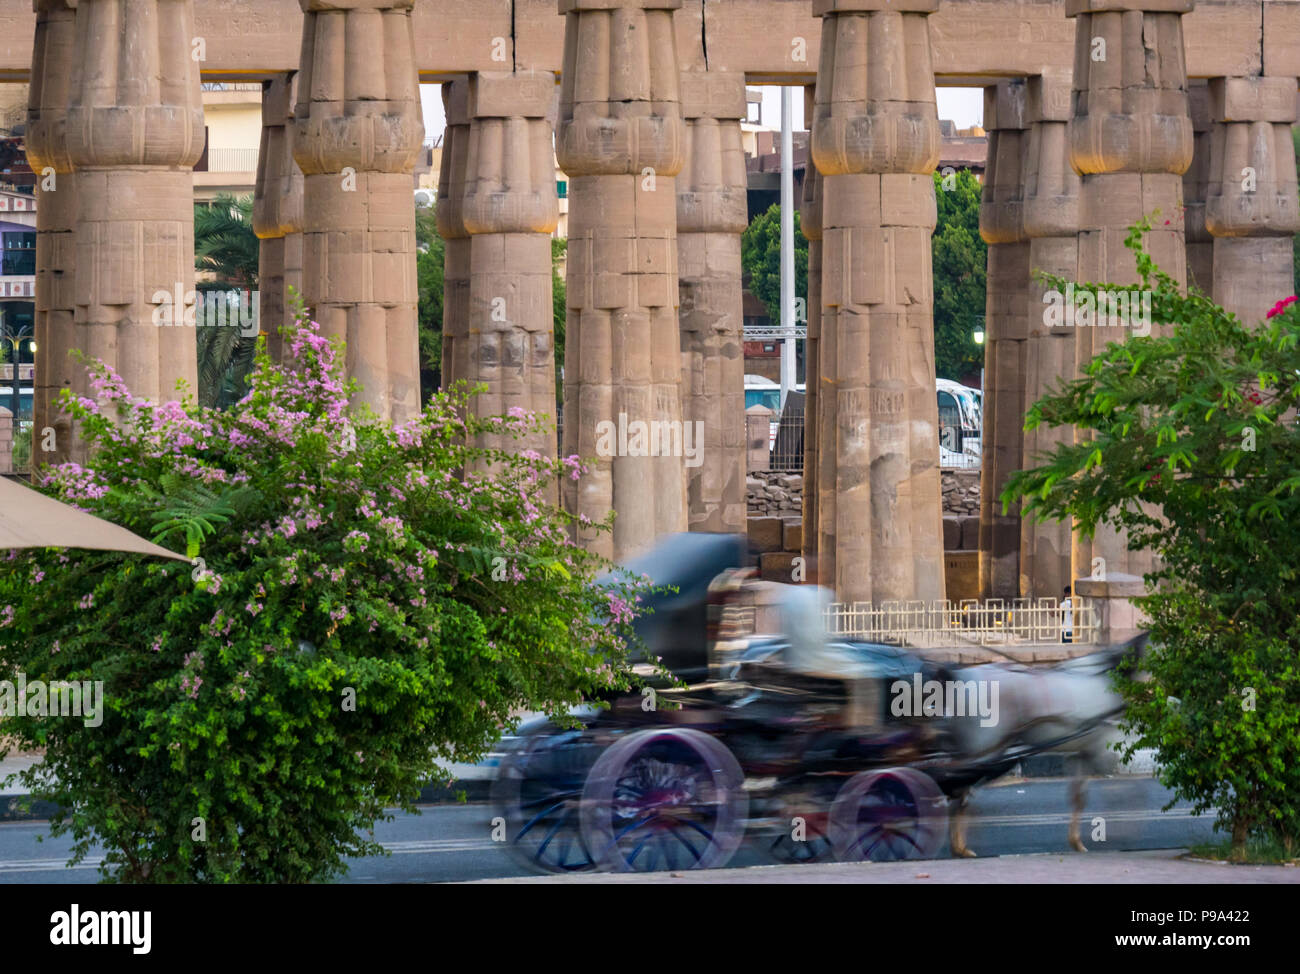 Blurred motion délibérée de l'élévateur en face de Temple d'Amon, colonnes, le temple de Louxor, Louxor, Egypte, Afrique du Sud Banque D'Images